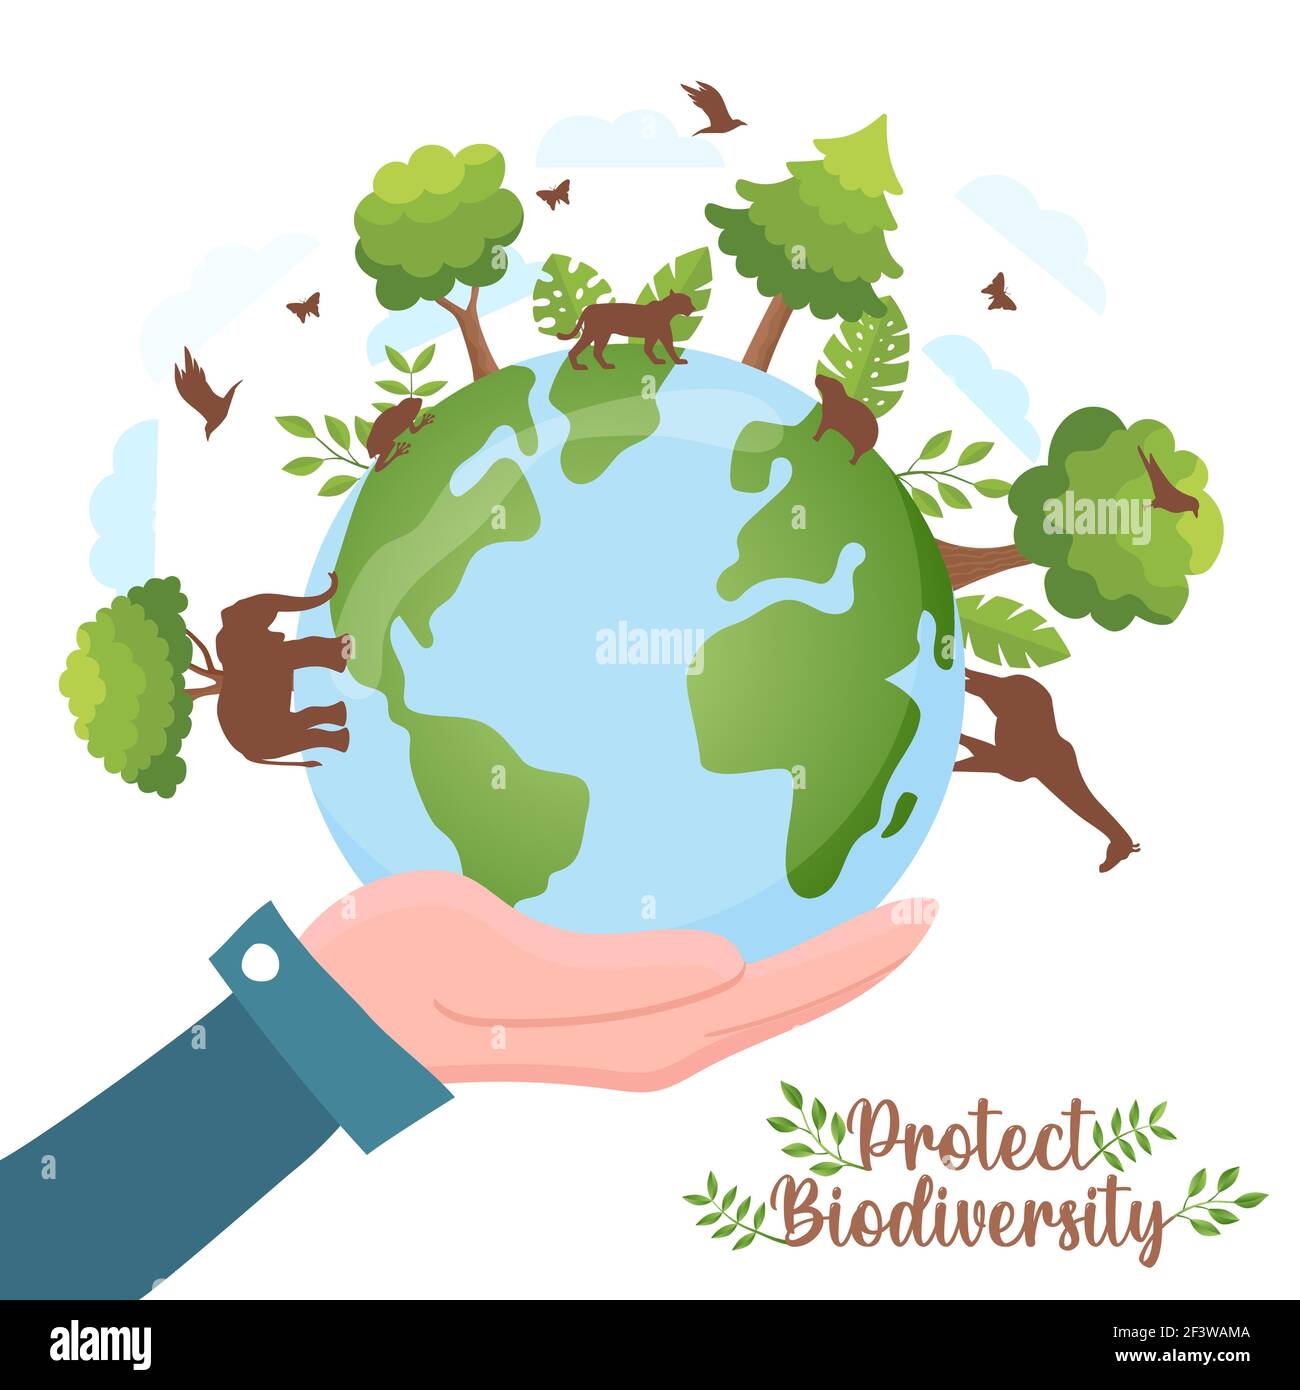 Schützen Sie die Artenvielfalt Illustration der menschlichen Hand hält grünen Planeten Erde mit wilden Tieren zu Fuß und Bäume. Konzept zur Sensibilisierung der Natur. Inklusive Stock Vektor